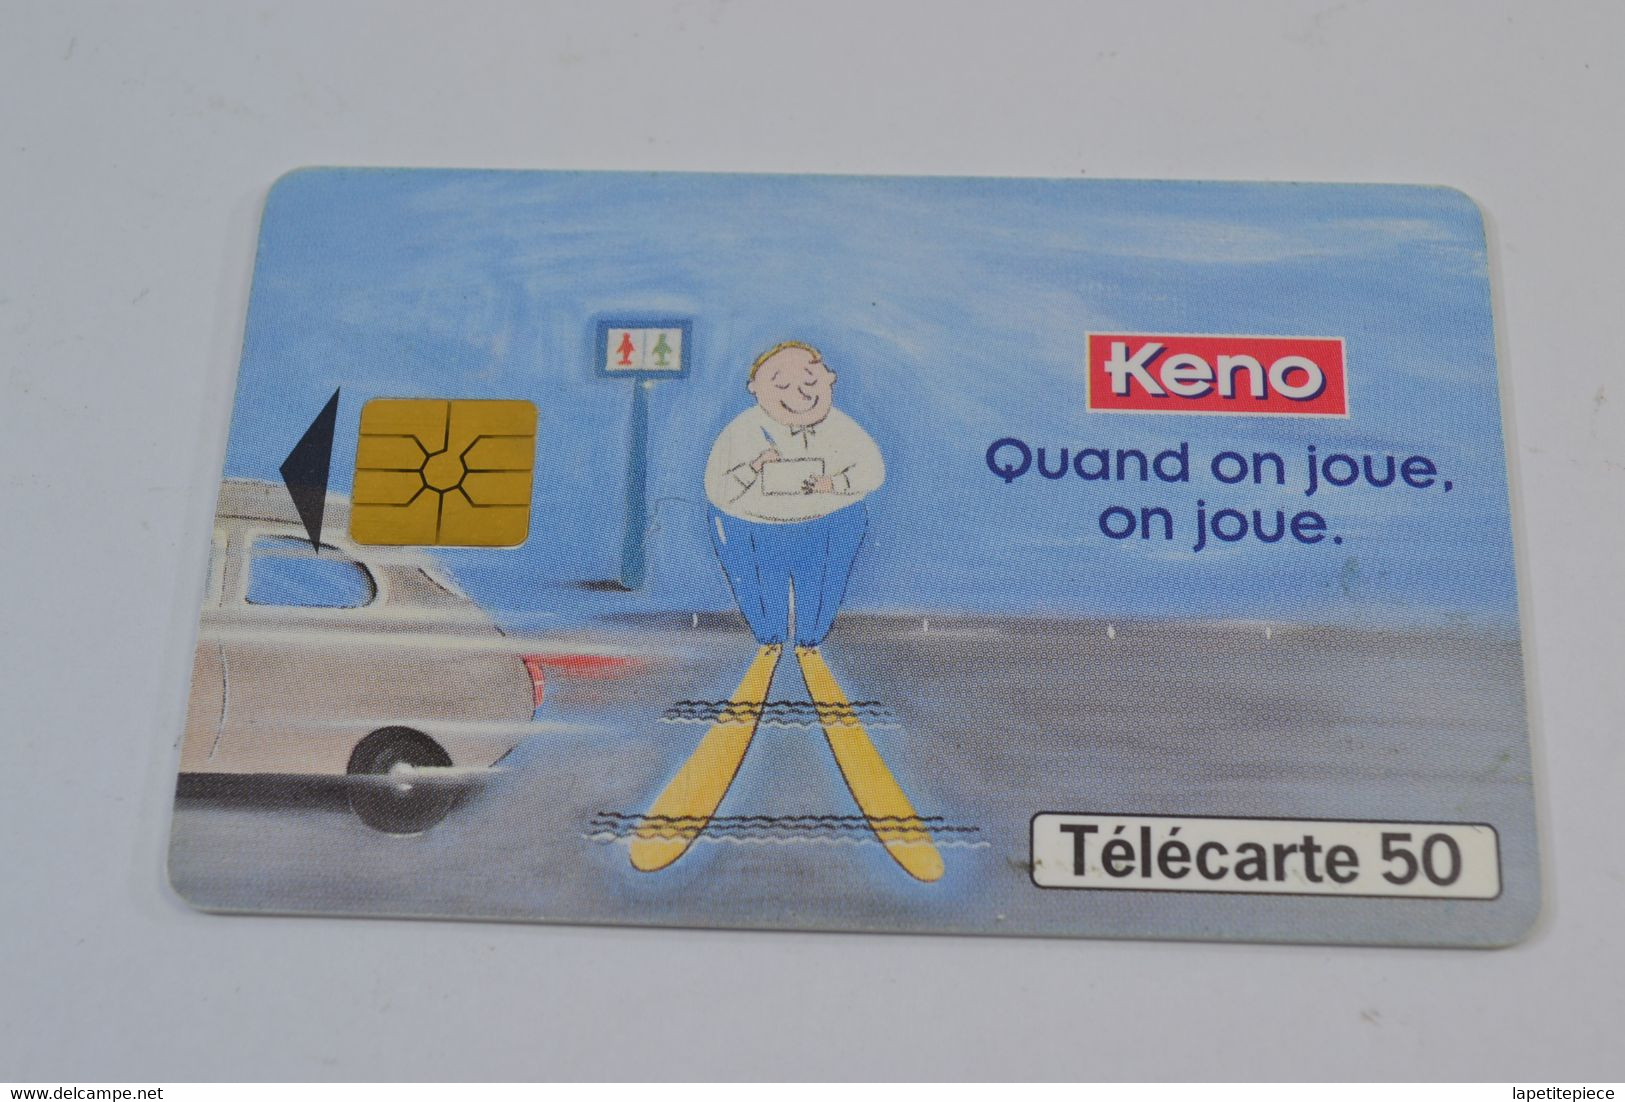 (A) Télécarte Carte Téléphonique 50 Keno Quand On Joue, On Joue. - Jeux